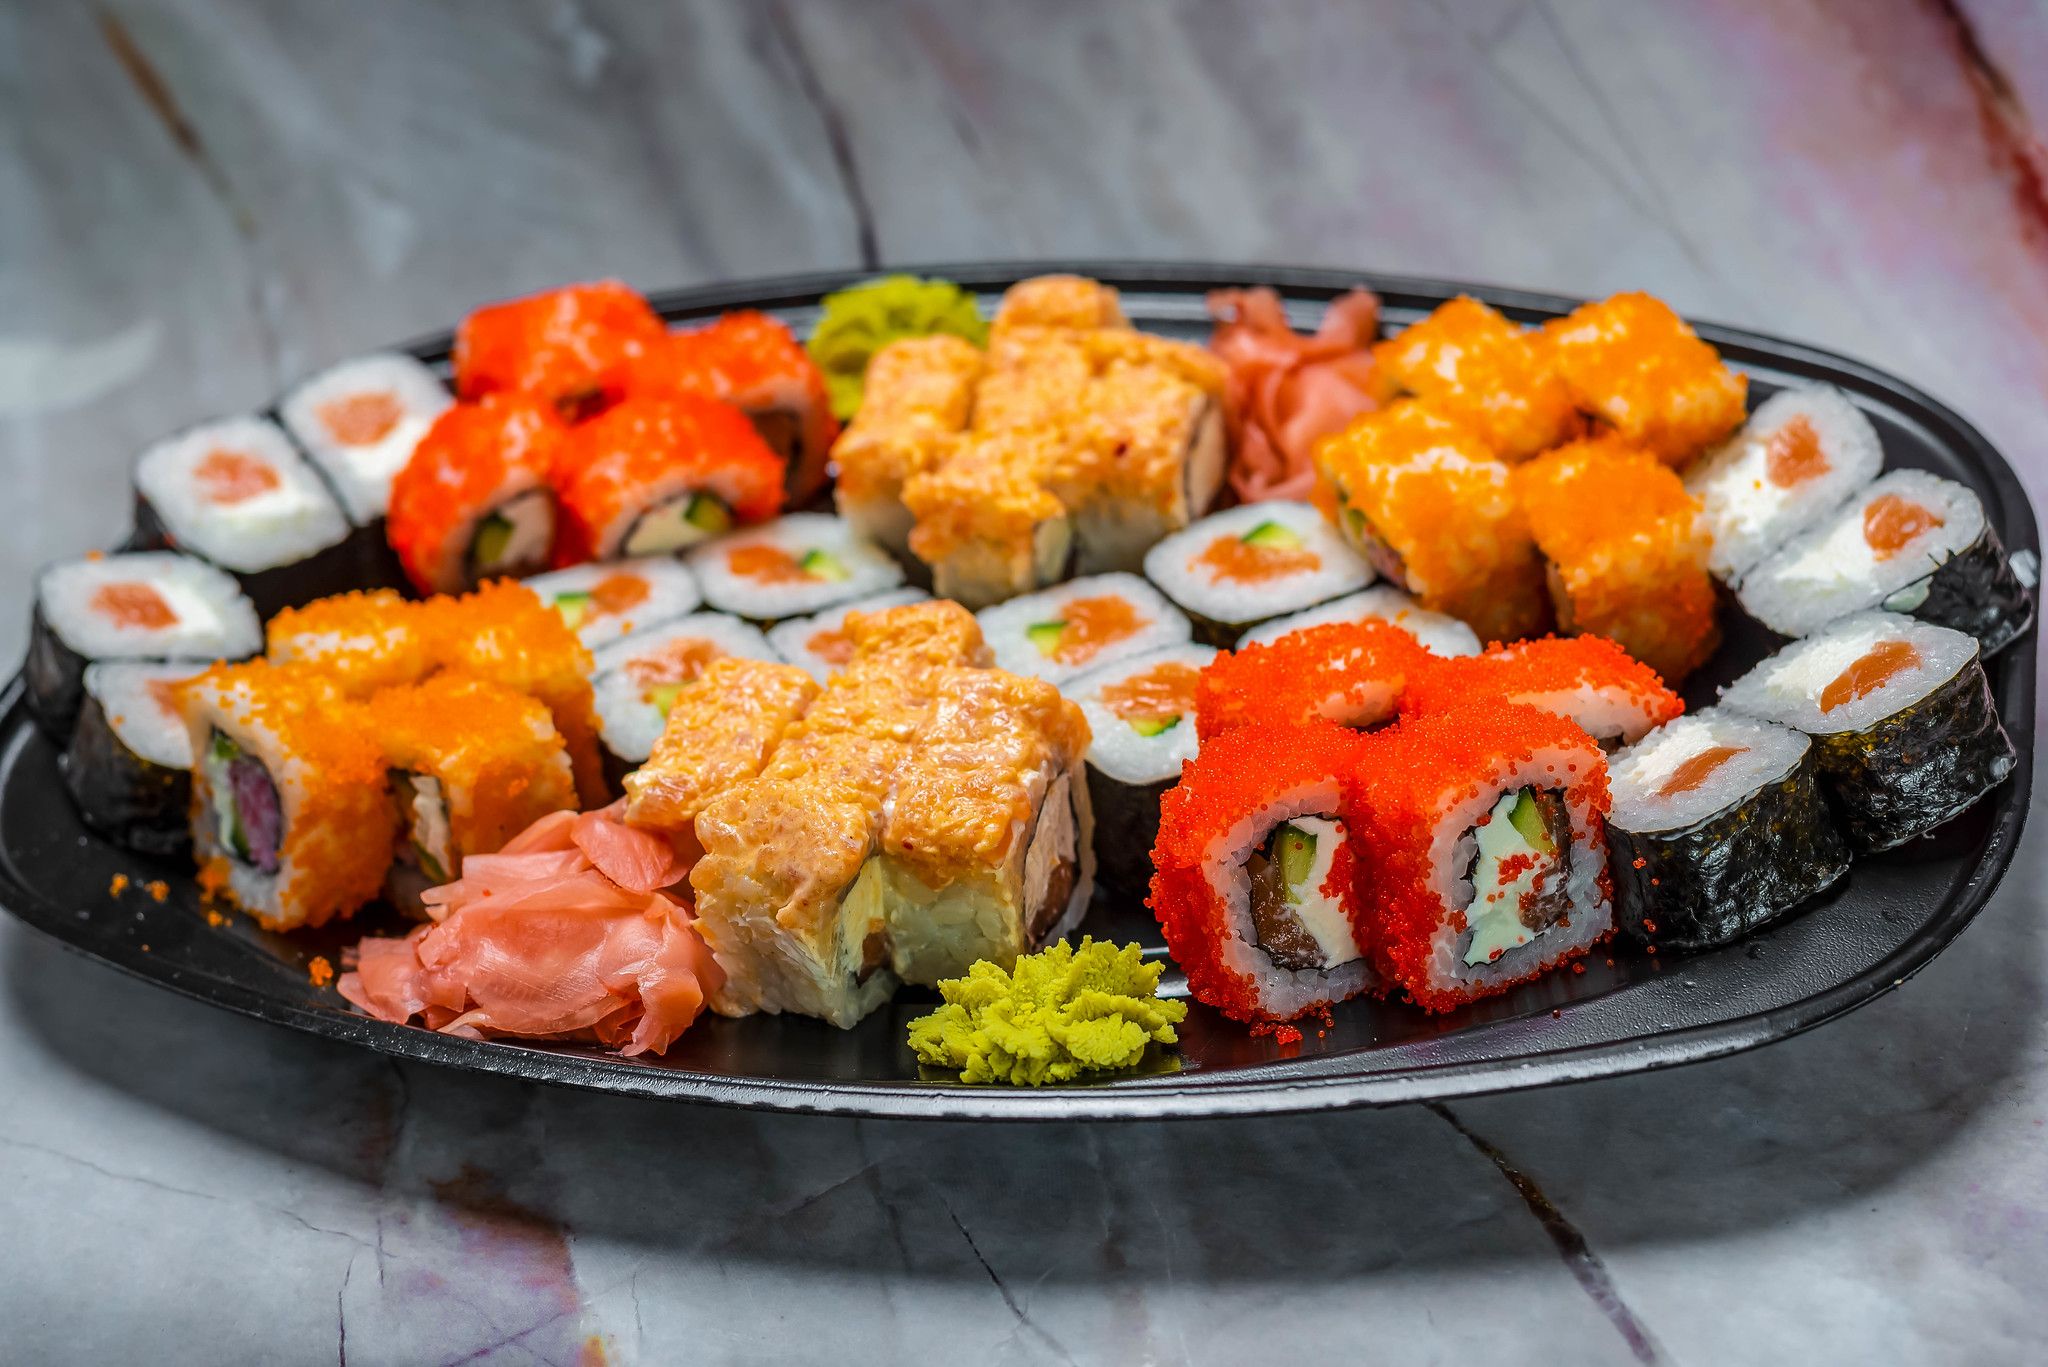 Arvostelu parhaista sushi- ja sämpylätoimituksista Kazanissa vuonna 2020